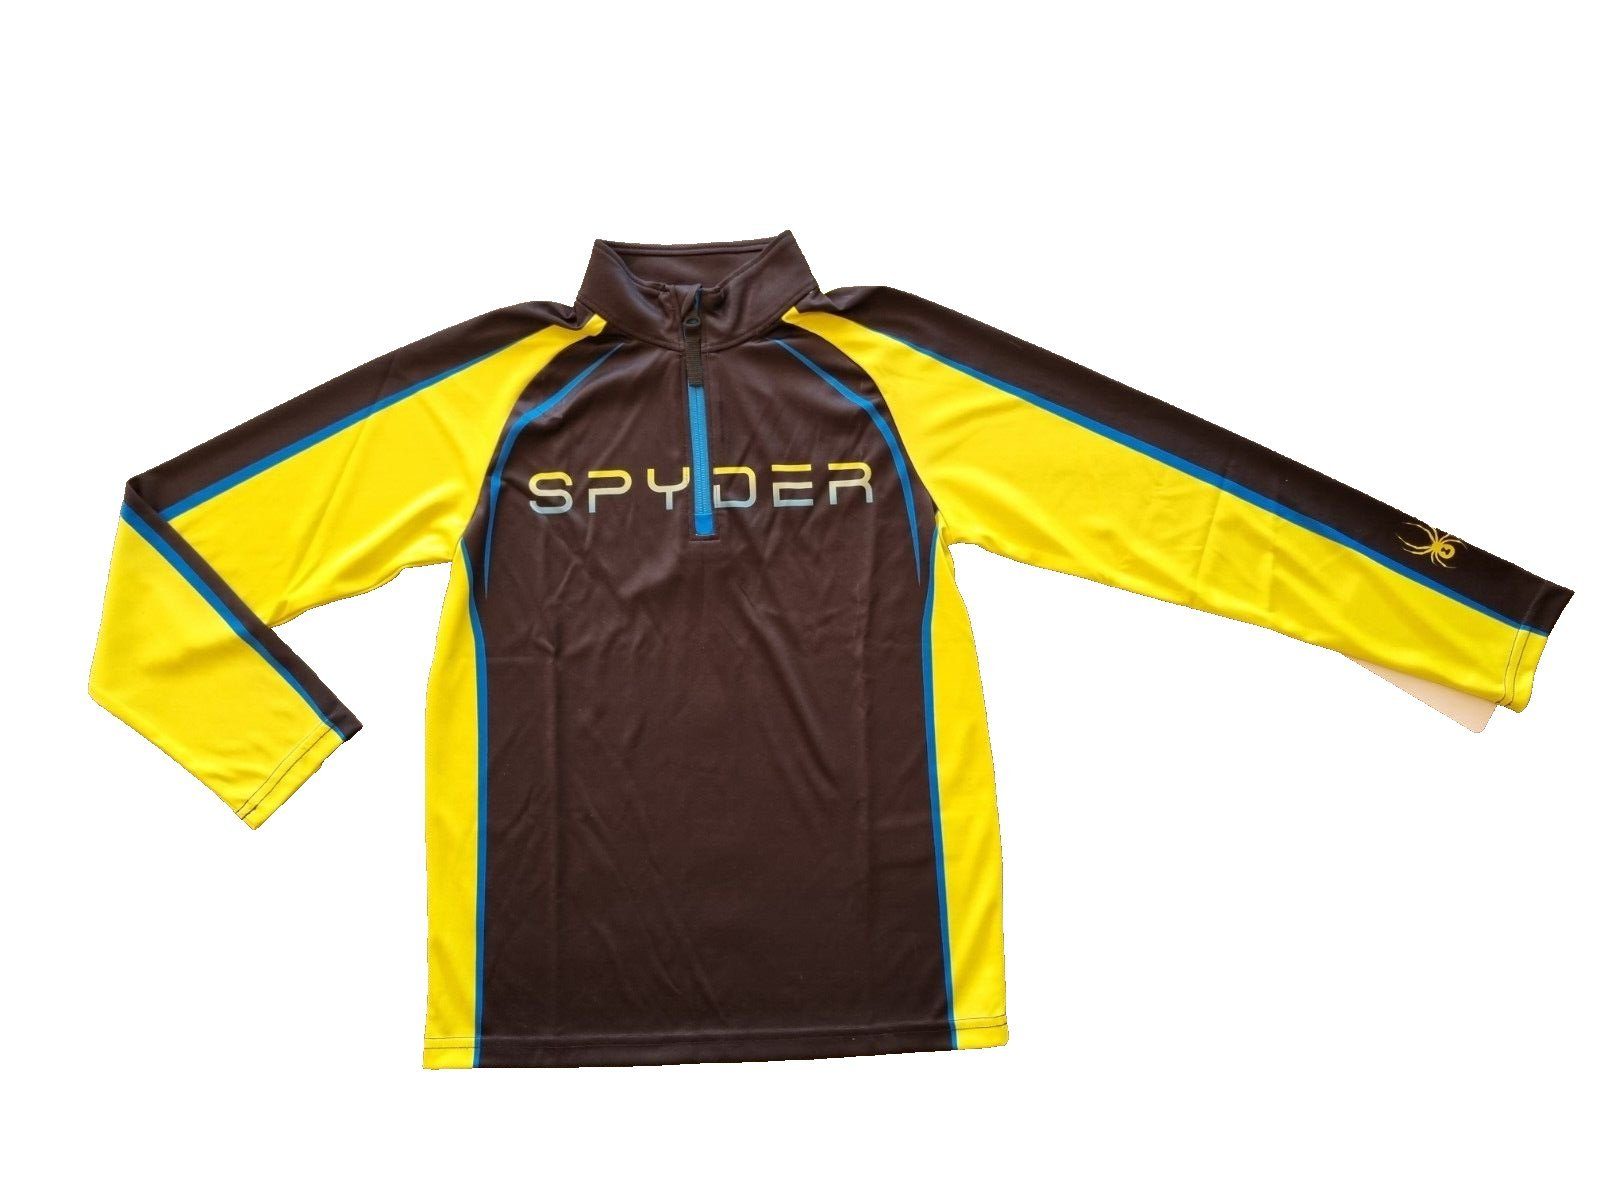 Spyder Fleeceshirt Downhill Skifleece für Kinder gelb